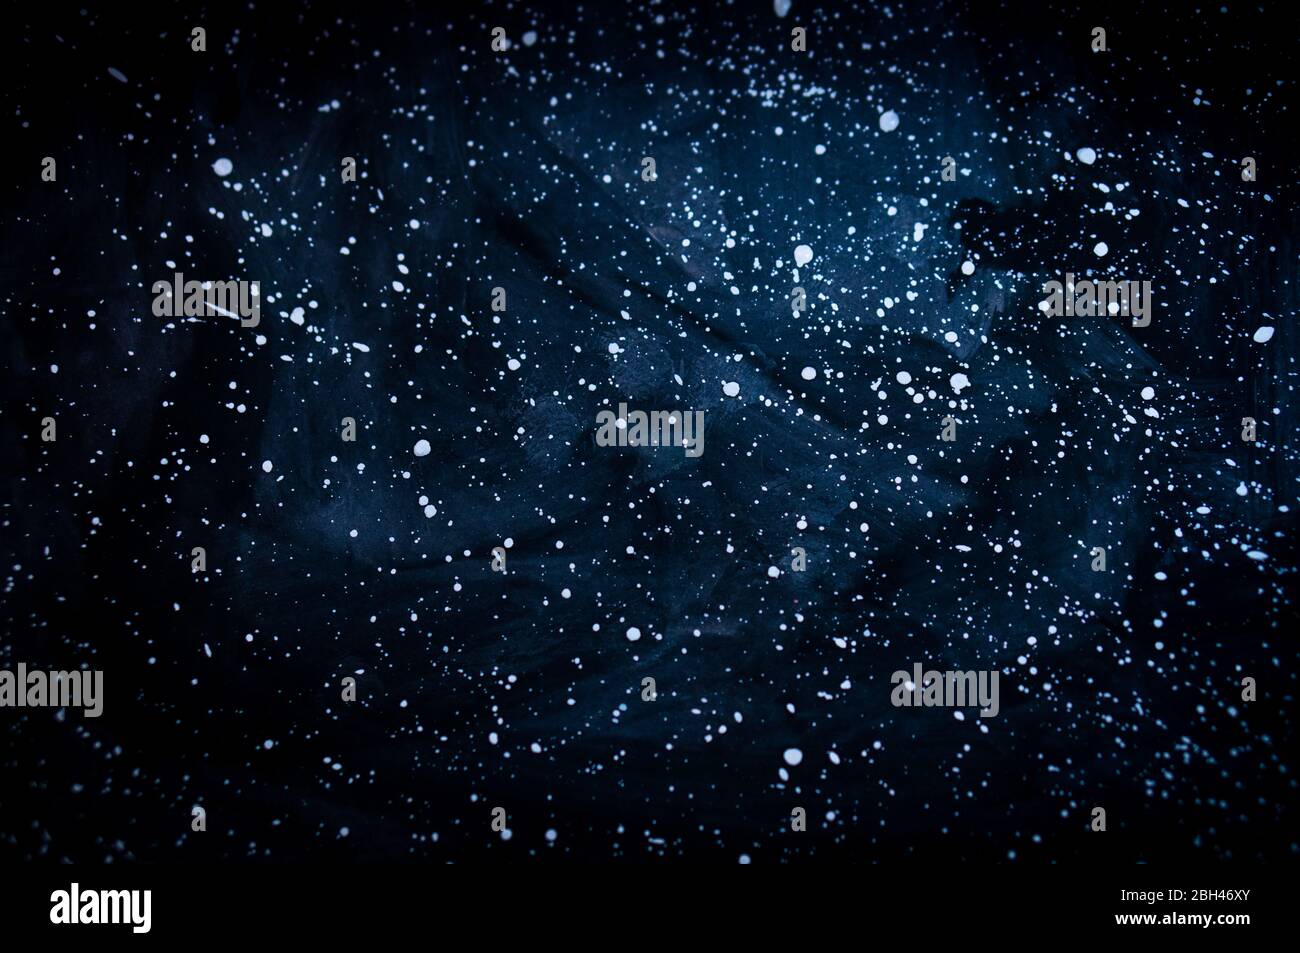 Handgezeichnetes Bild des Sternenhimmels mit Galaxienwirbeln Stockfoto